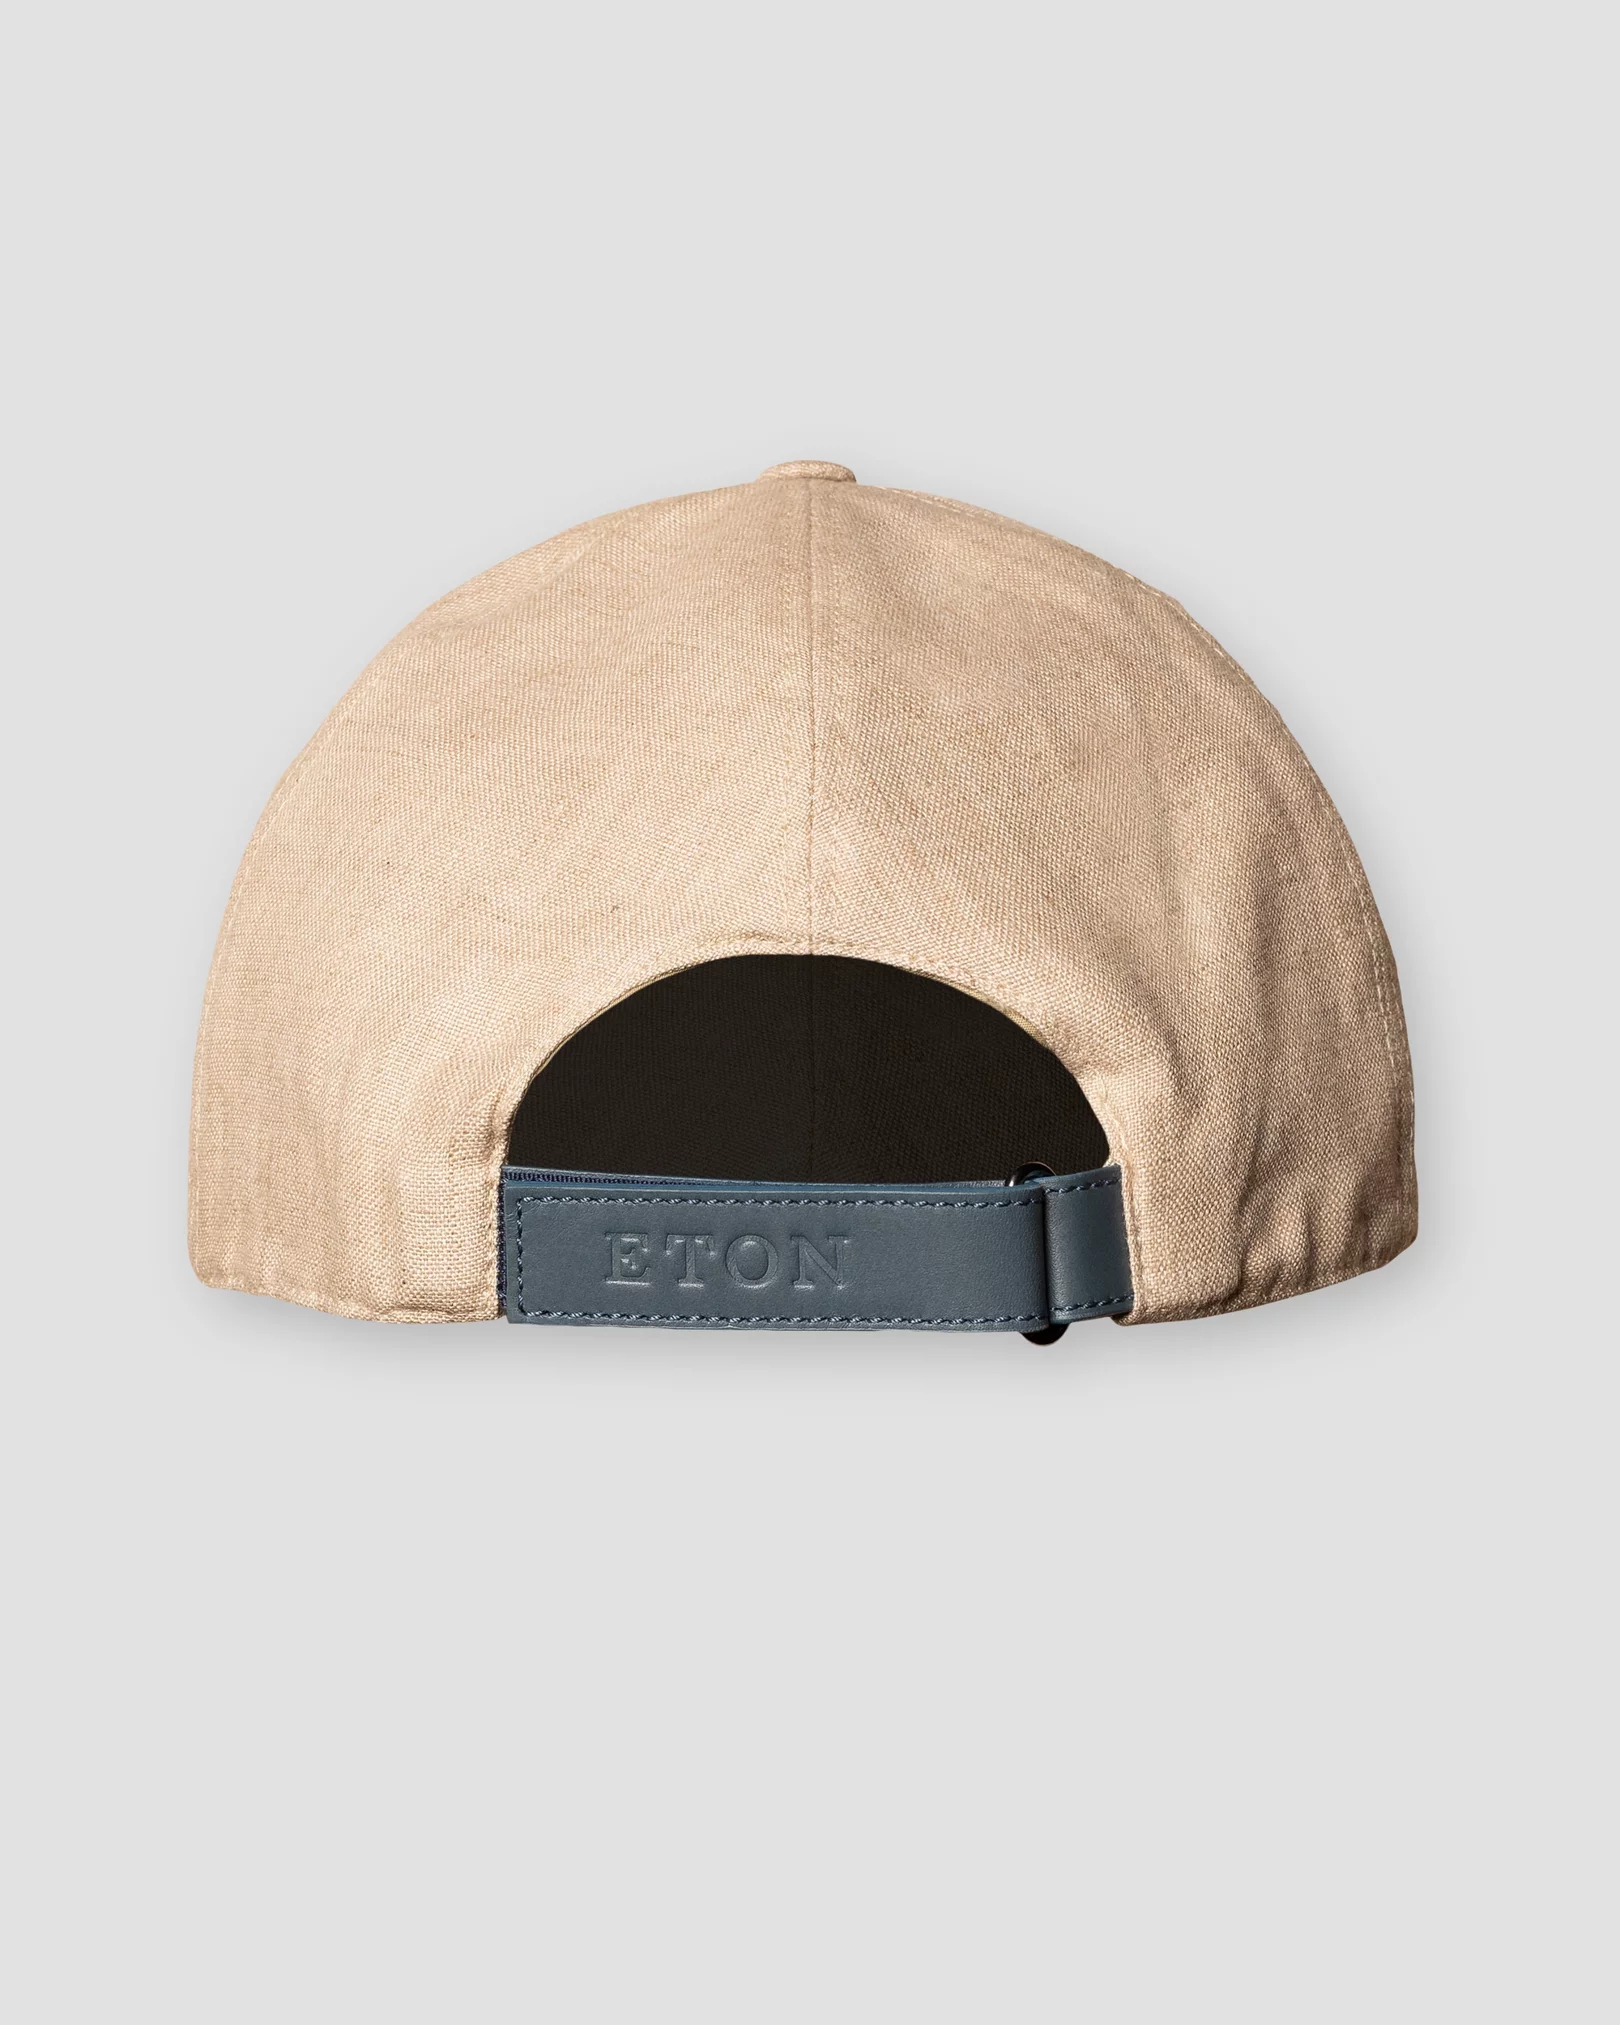 Eton - dark brown baseball cap